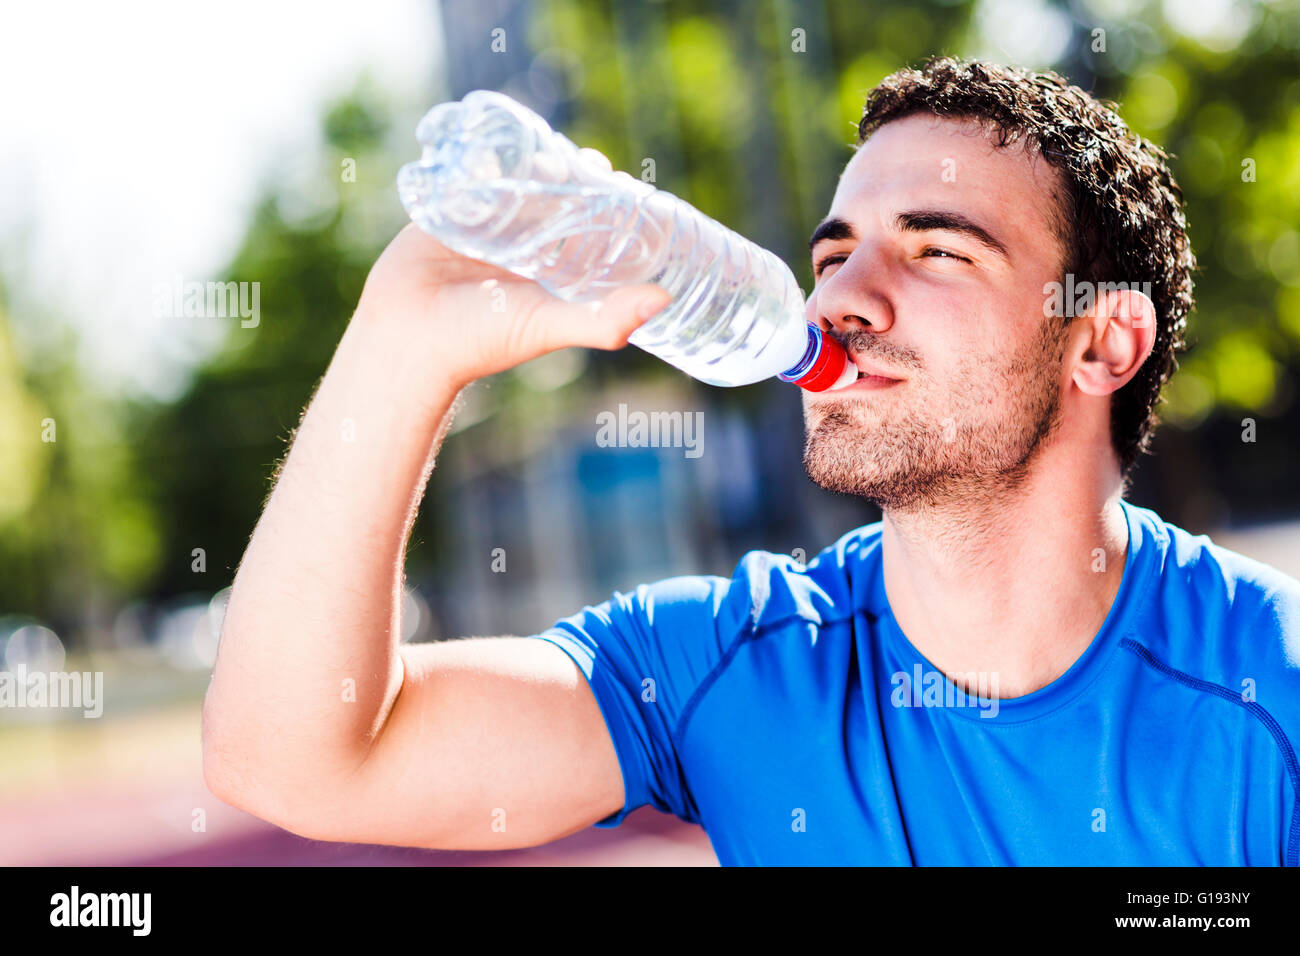 Beau jeune homme athlétique l'eau potable au cours d'une chaude journée d'été pour rafraîchir son corps et âme Banque D'Images